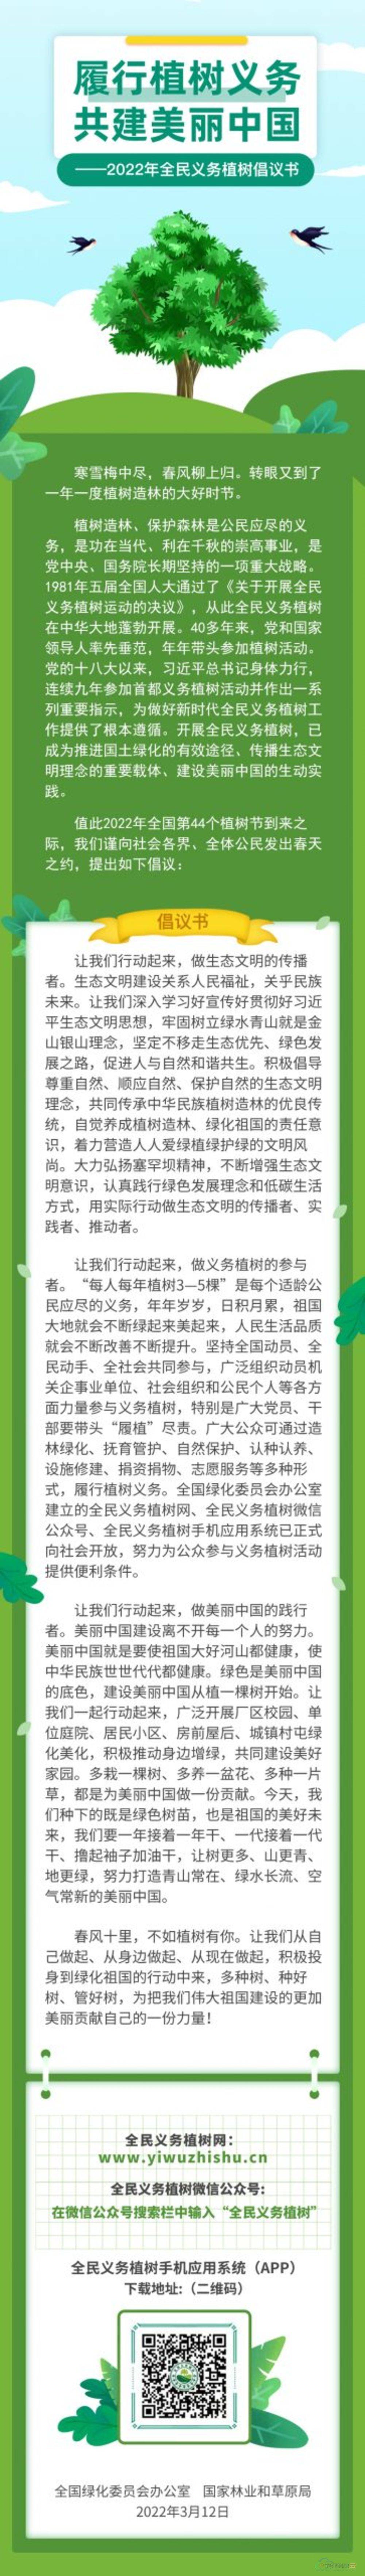 图片[3]-履行植树义务 共建美丽中国 ——2022年全民义务植树倡议书-地理信息云